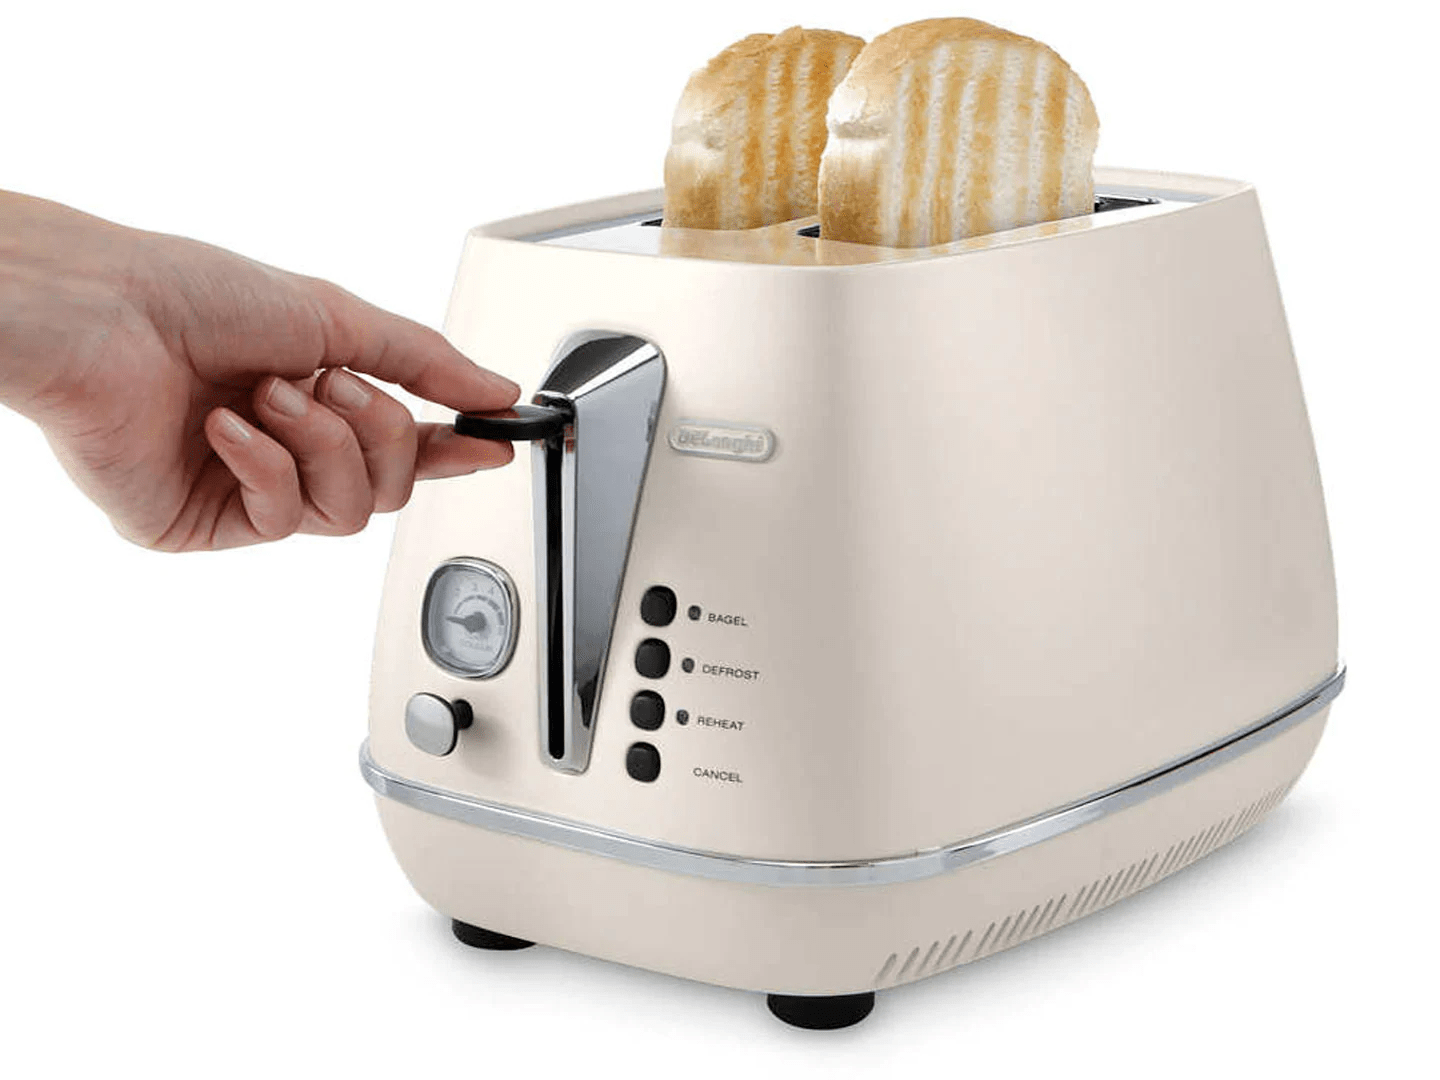 Bộ máy pha cà phê Delonghi Espresso kèm máy làm bánh mì, bình siêu tốc - Thương hiệu Ý - Hàng chính hãng